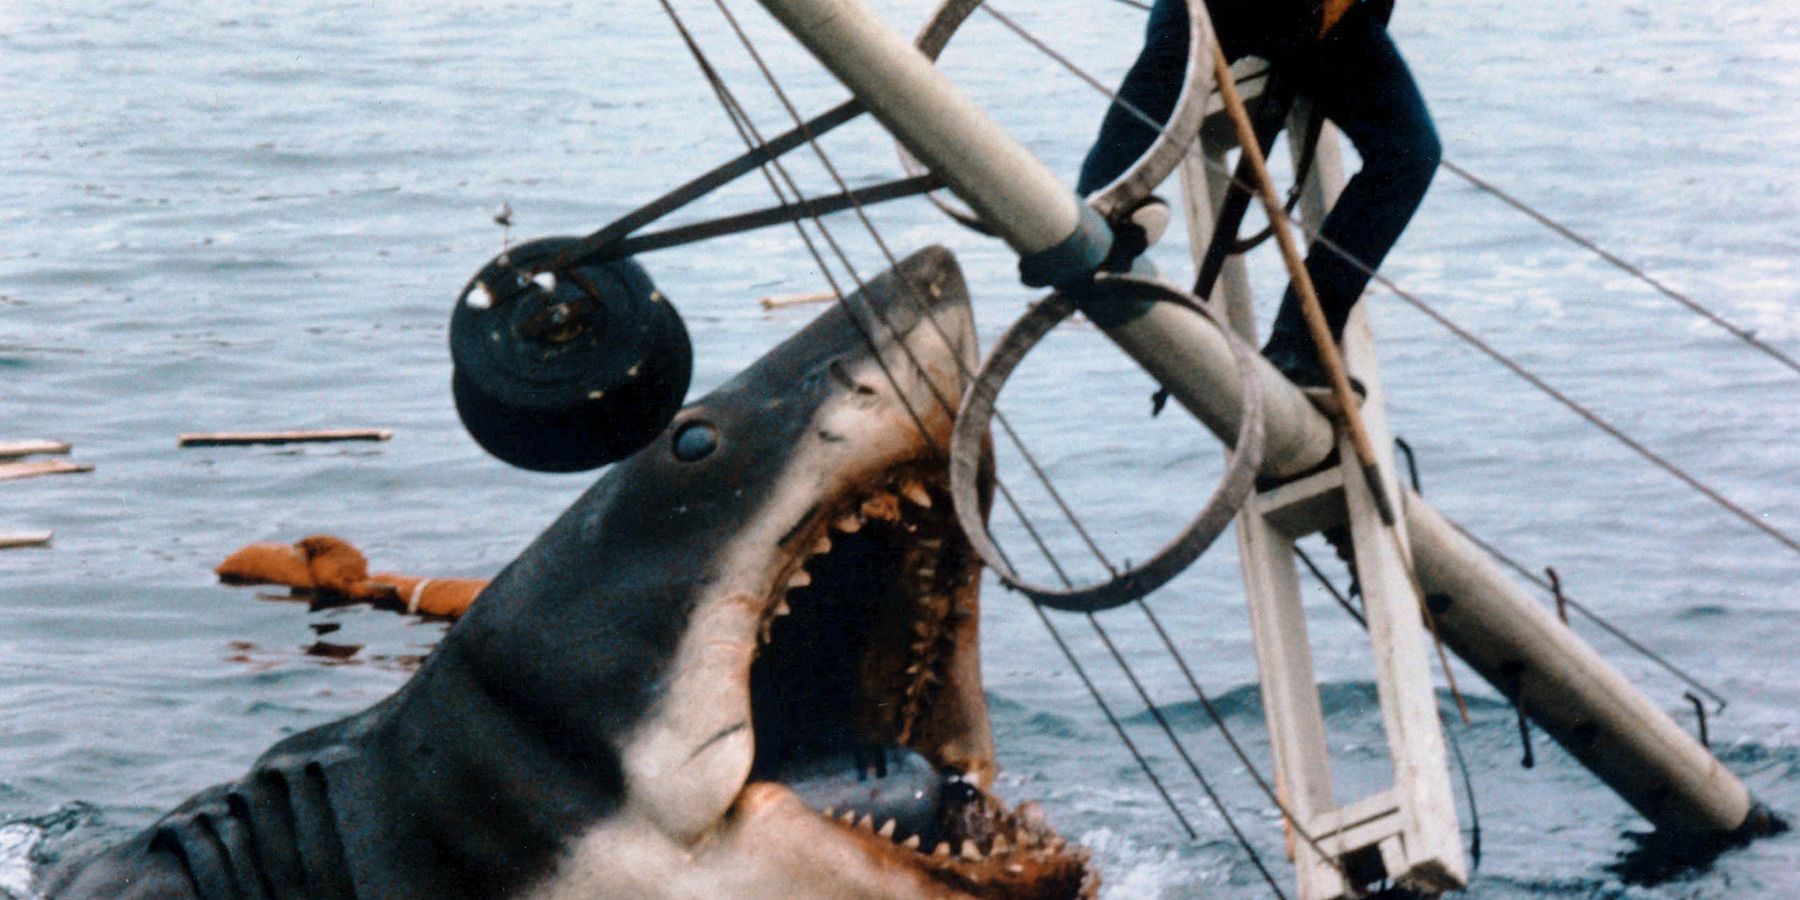 Steven Spielberg Jaws Shark Hunting